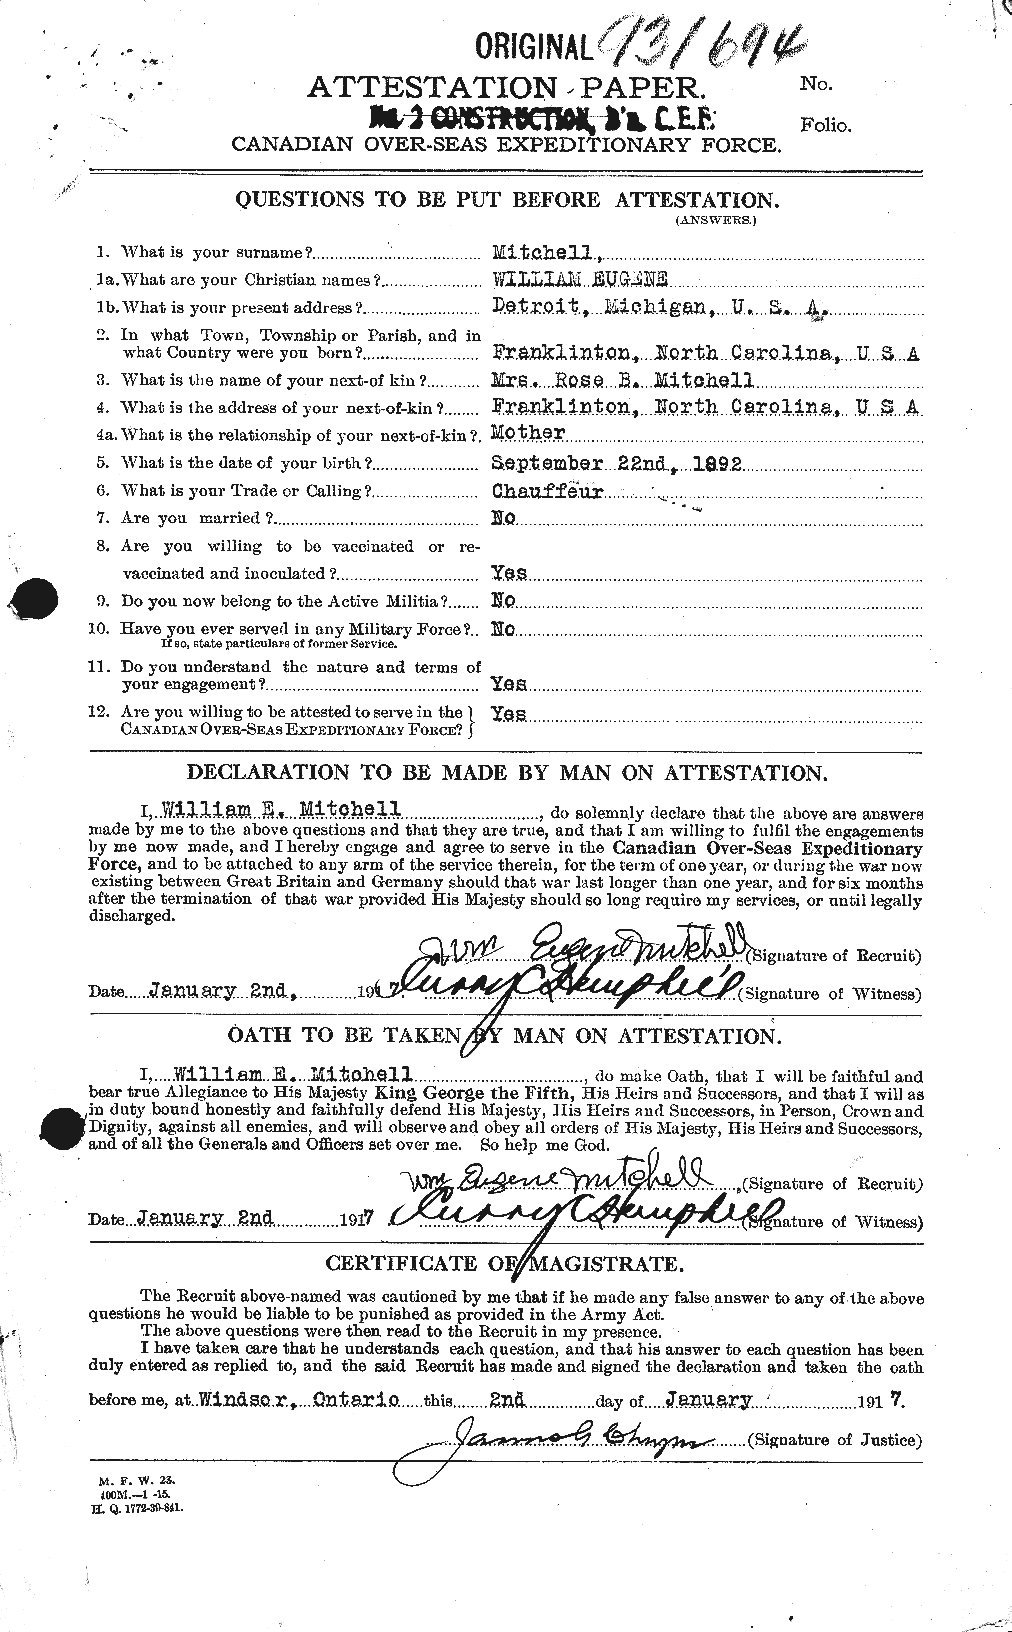 Dossiers du Personnel de la Première Guerre mondiale - CEC 496672a